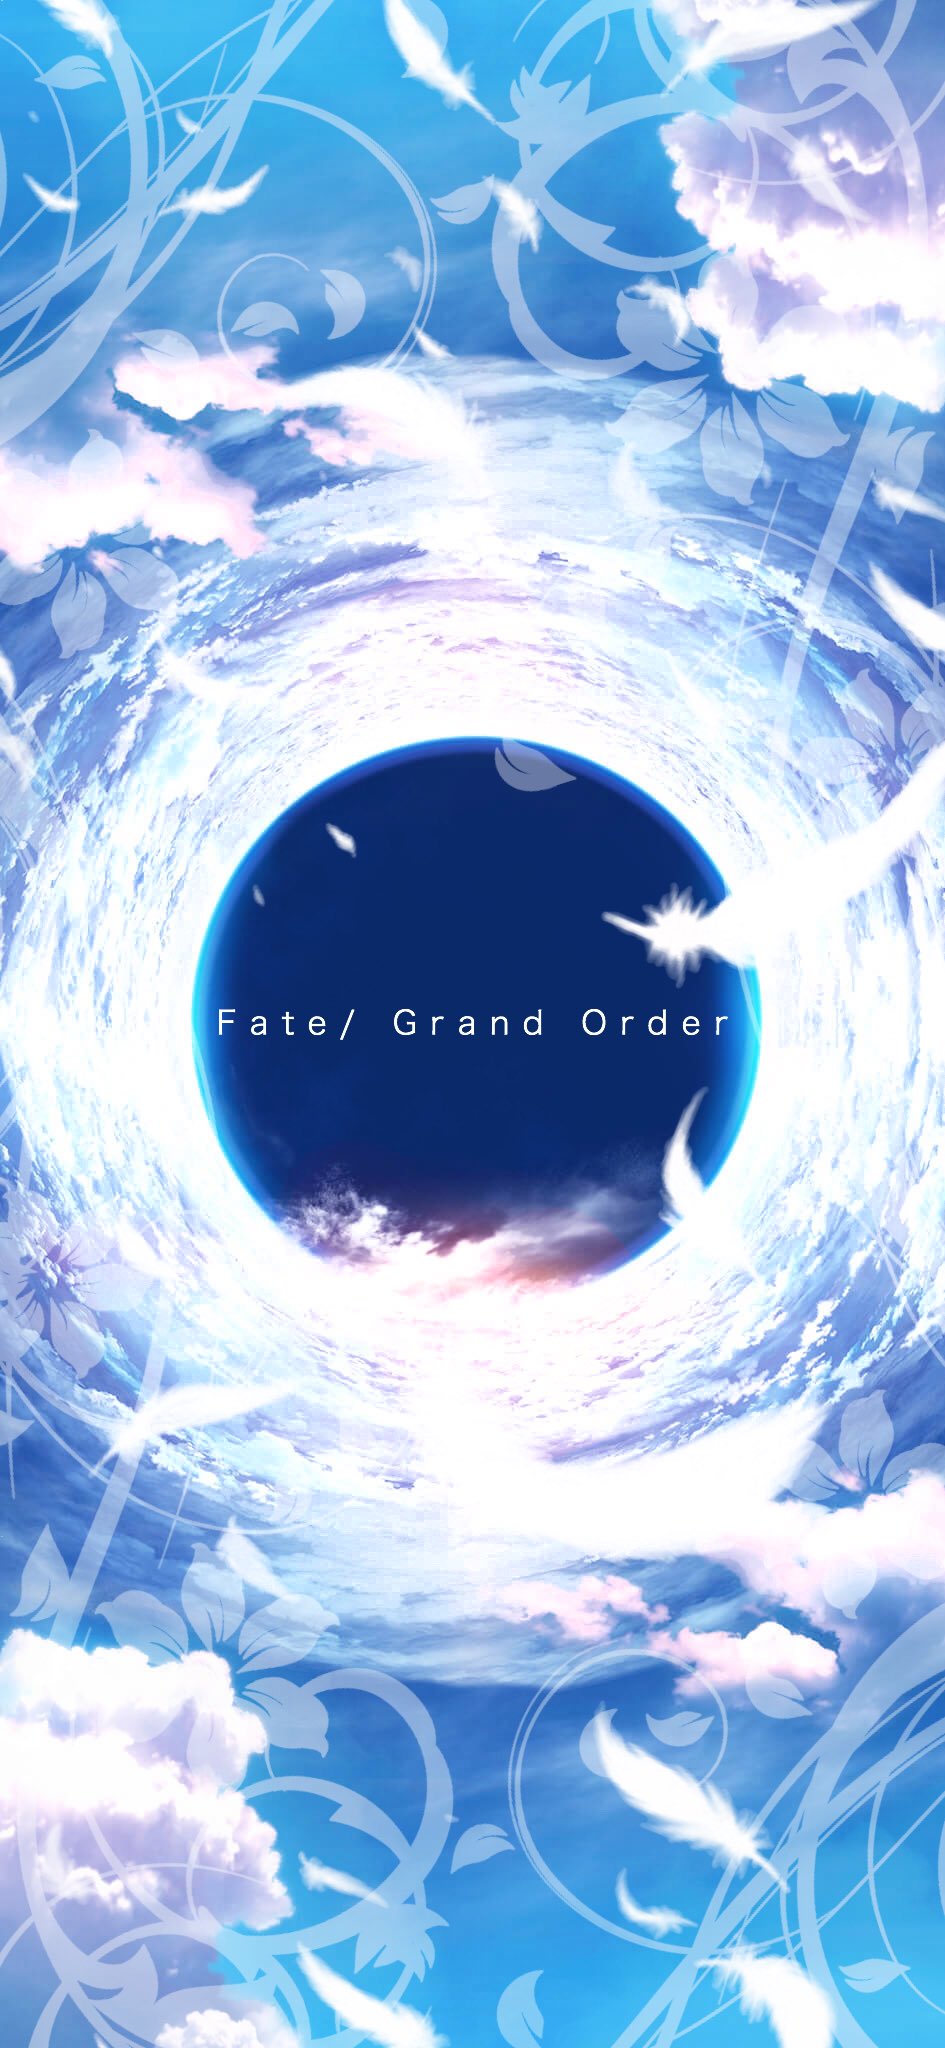 輝桜 かぐさ Na Twitteri 輝桜の壁紙宝庫 第246弾 Fate Fate Grand Orderの壁紙です 空のイメージです Fate Fgo Fatego Fate壁紙宝庫